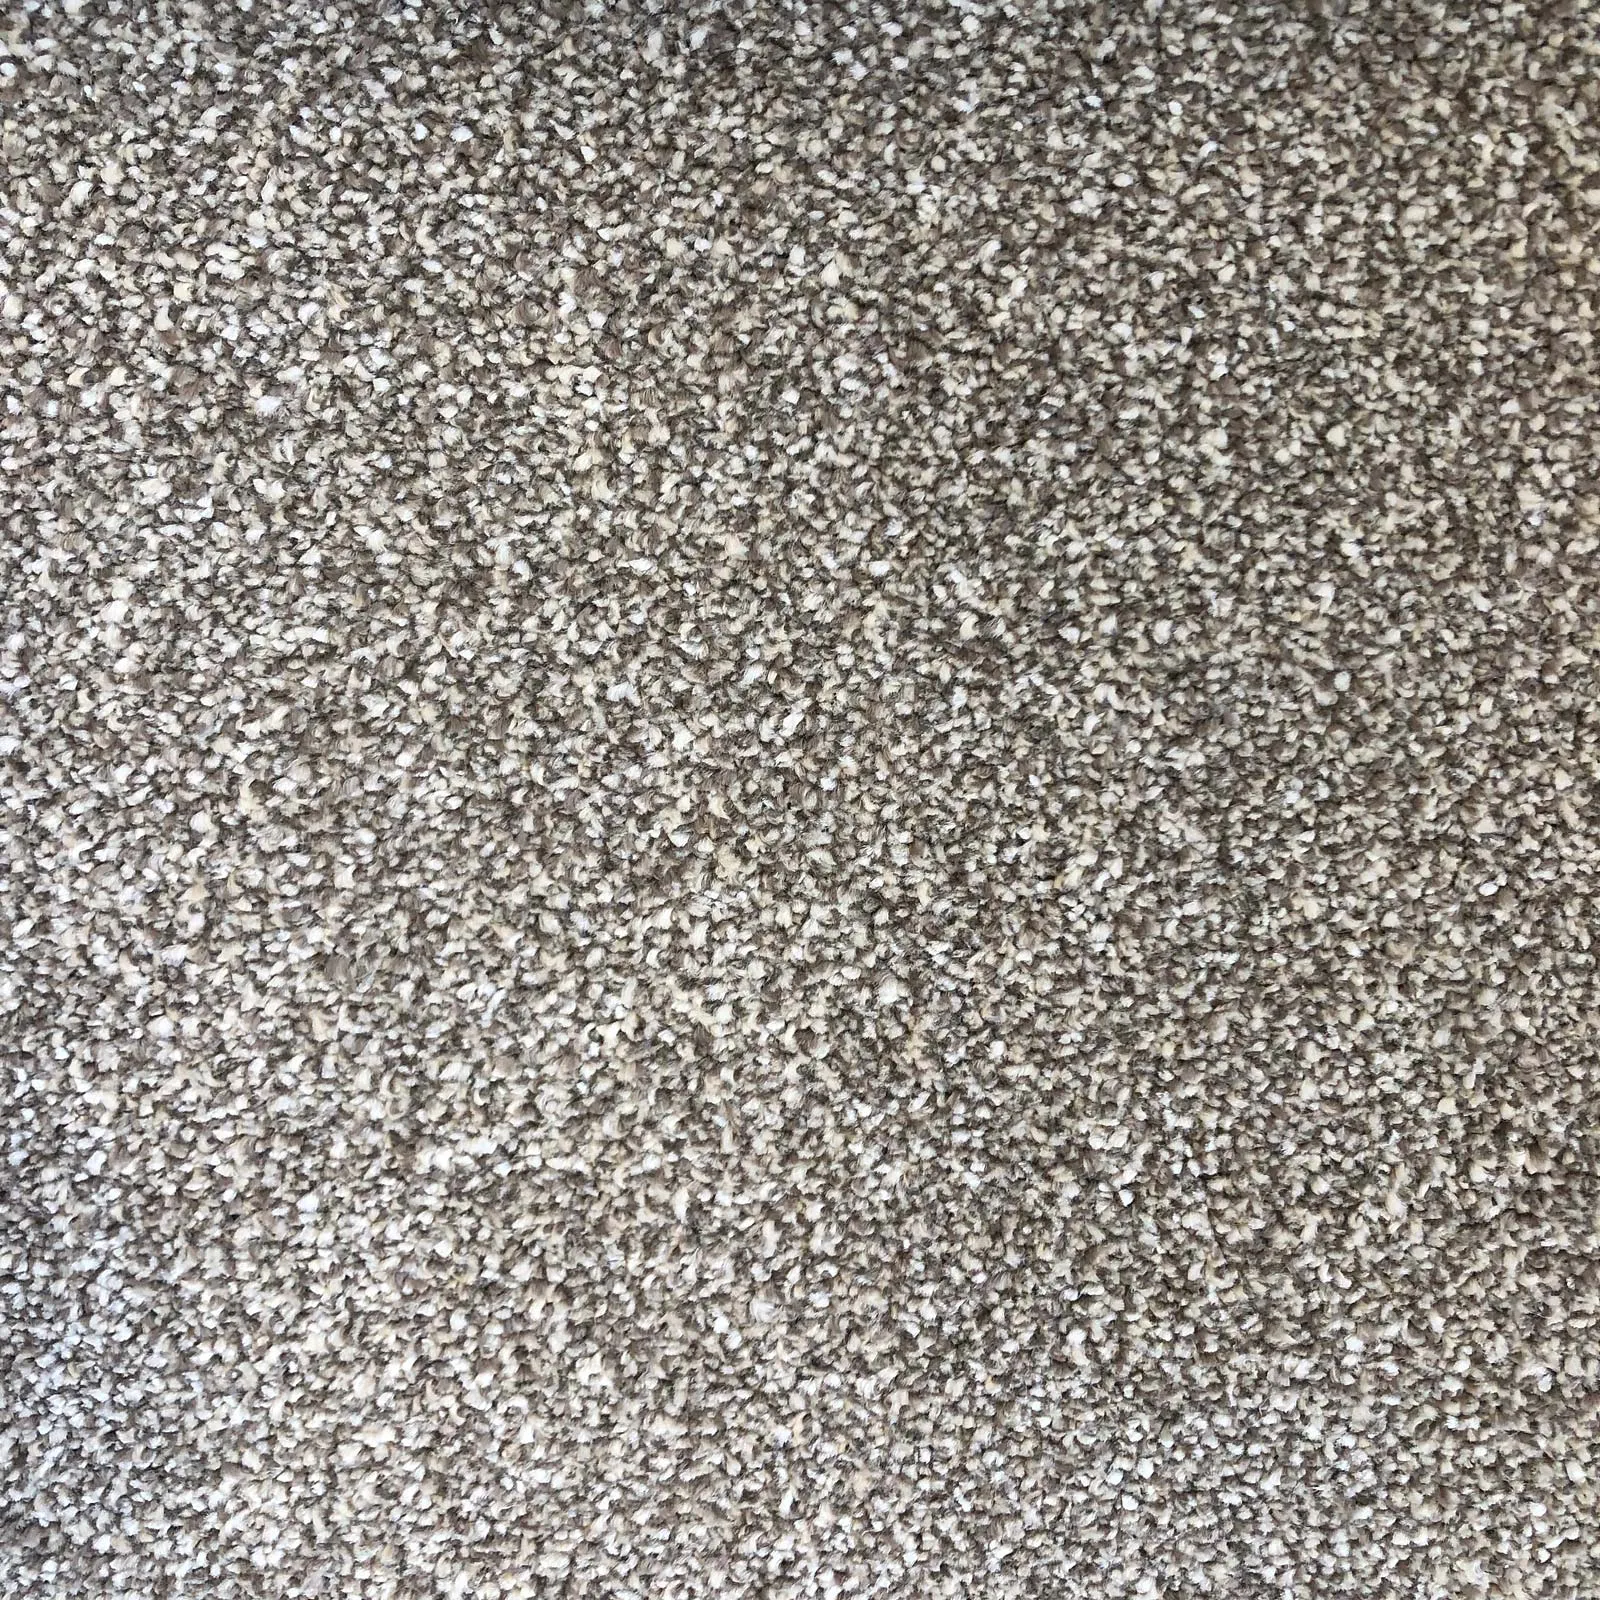 Serenade-Rustique carpets L.FB Wexford Ireland